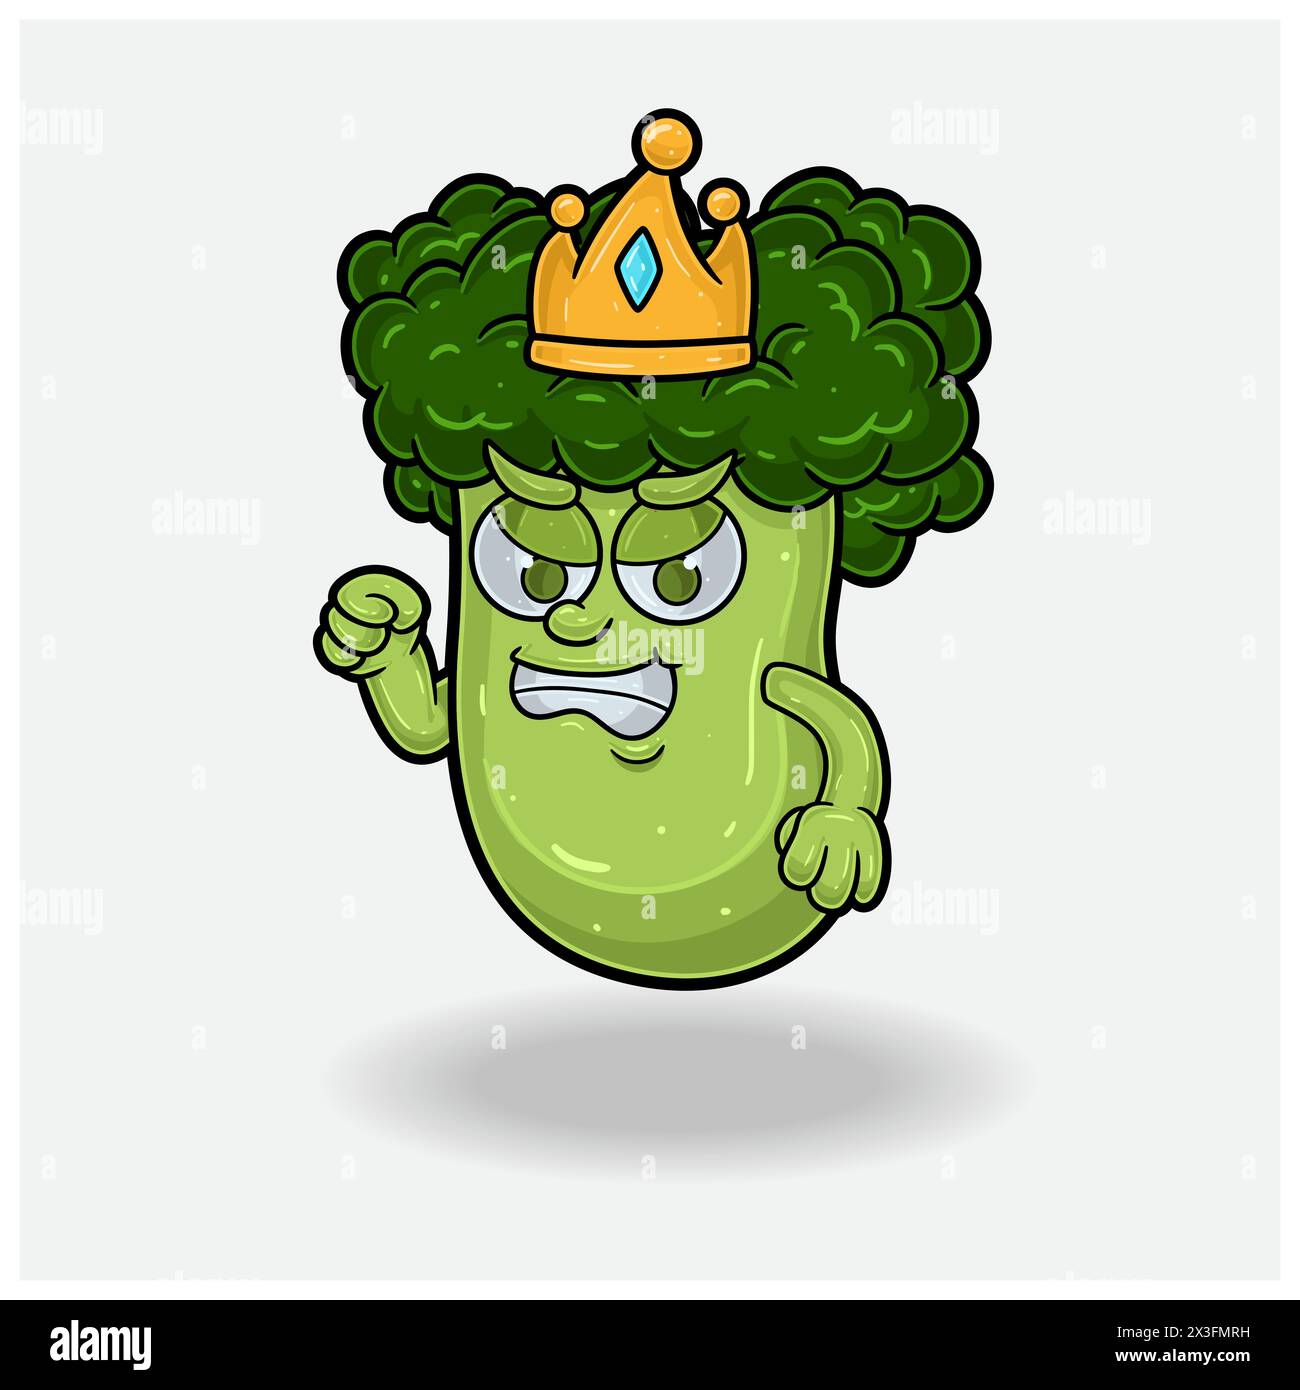 Broccoli Mascot personaggio Cartoon con espressione arrabbiata. Illustrazioni vettoriali Illustrazione Vettoriale